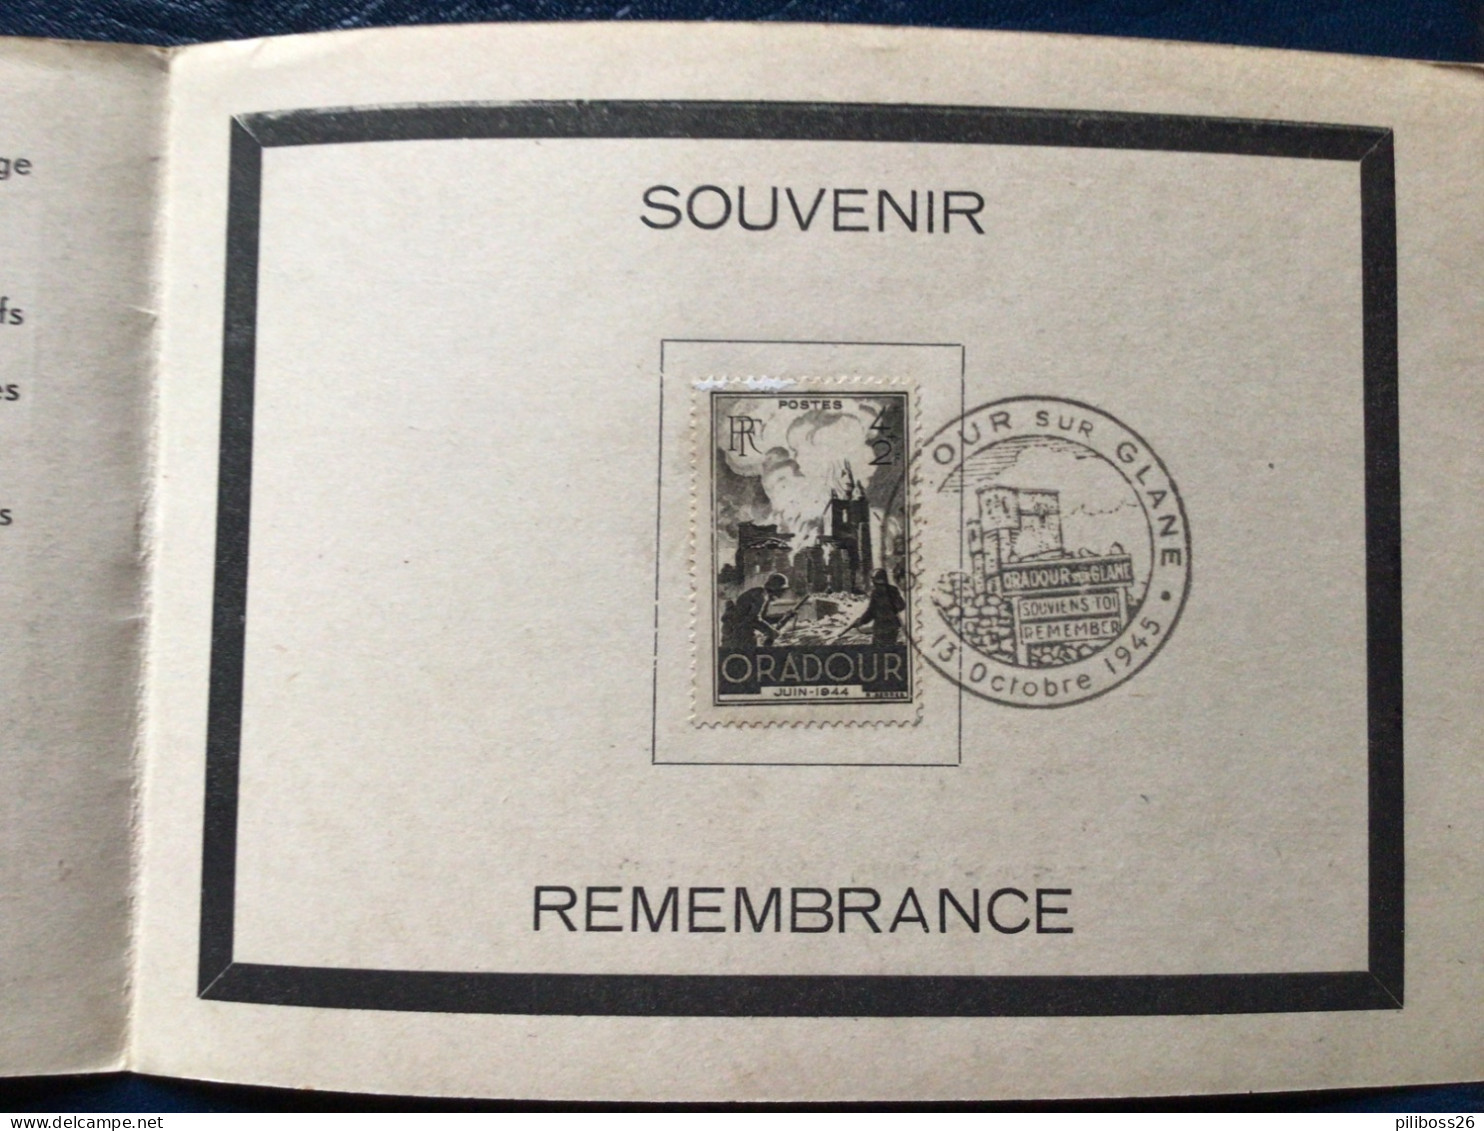 Oradour Sur Glane Remember Souvenir Philatélique  13 Octobre 1945 N 9573 Military - Collectors